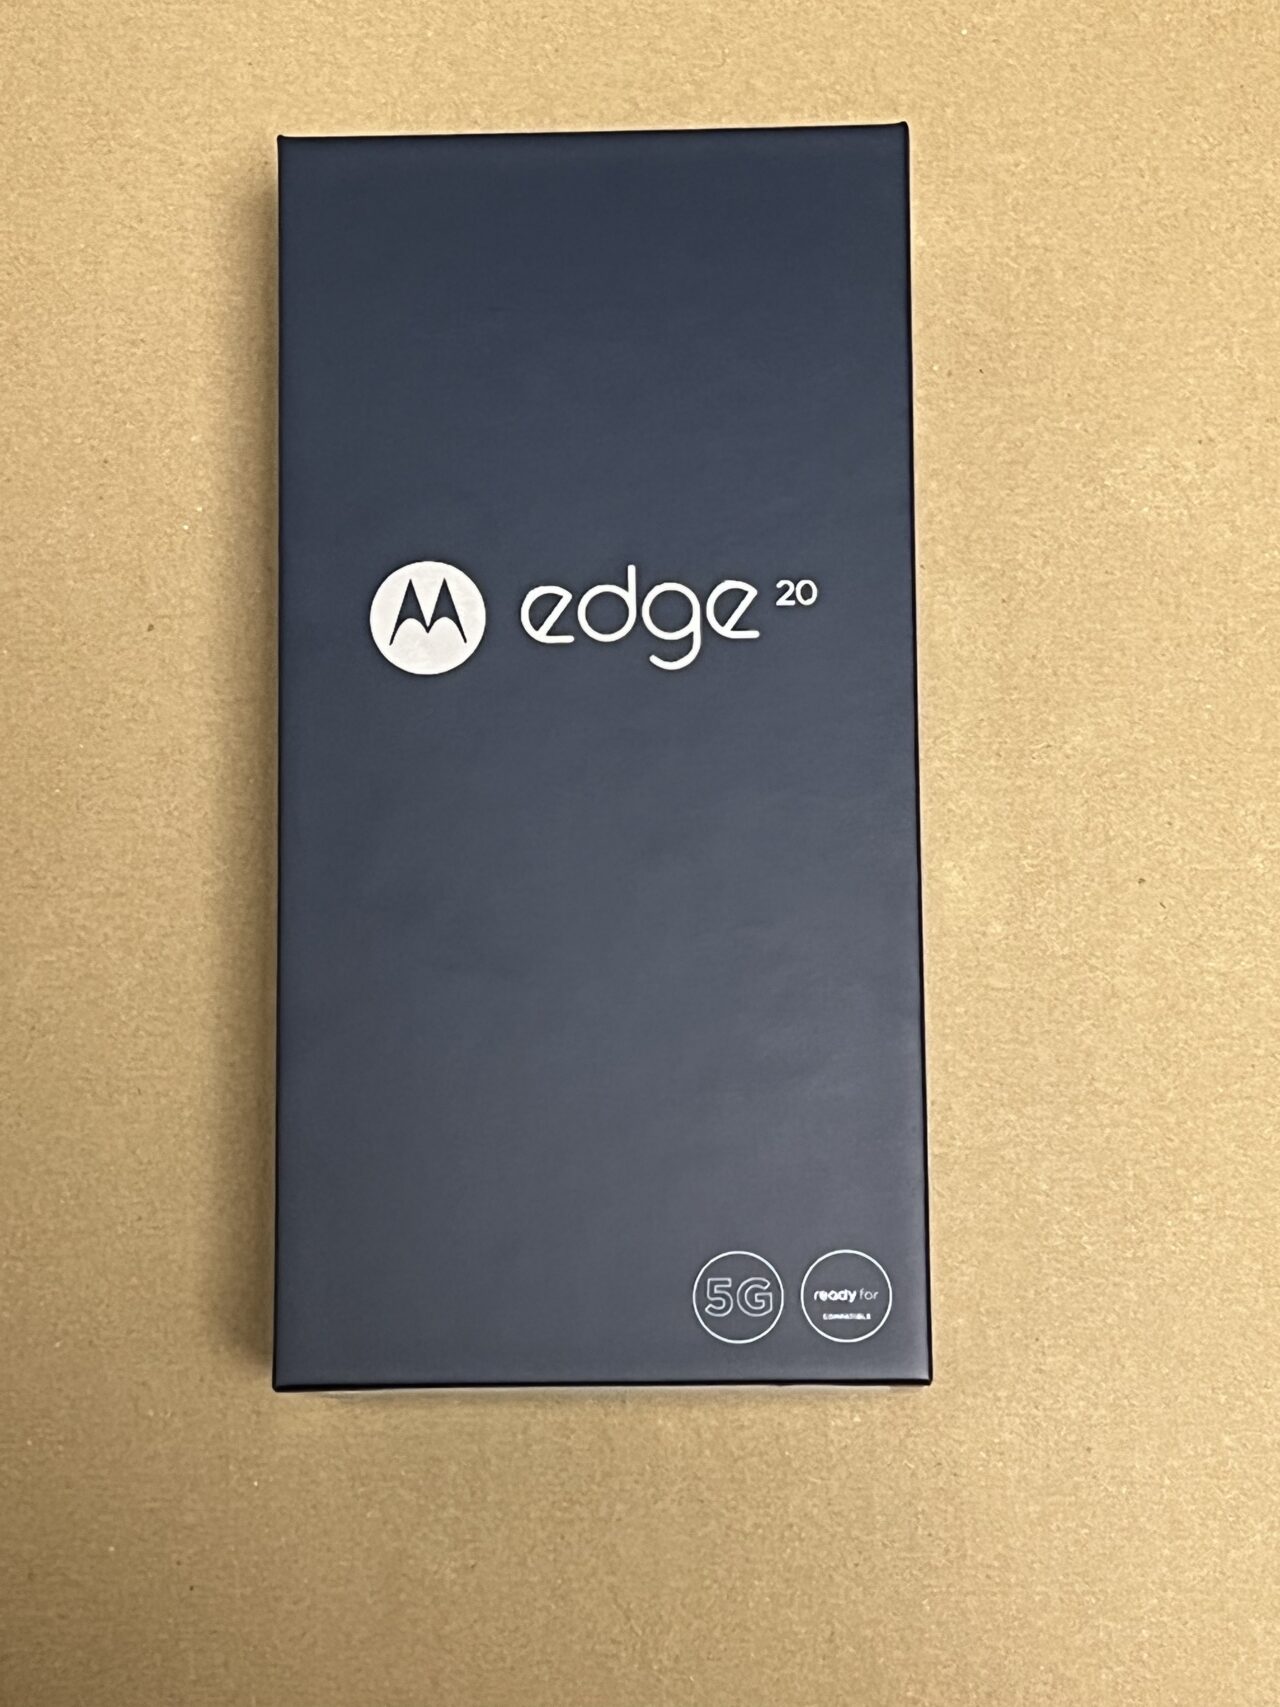 スマートフォン/携帯電話 スマートフォン本体 OCNモバイルONEでmotorola edge20を買いました、簡単に紹介 